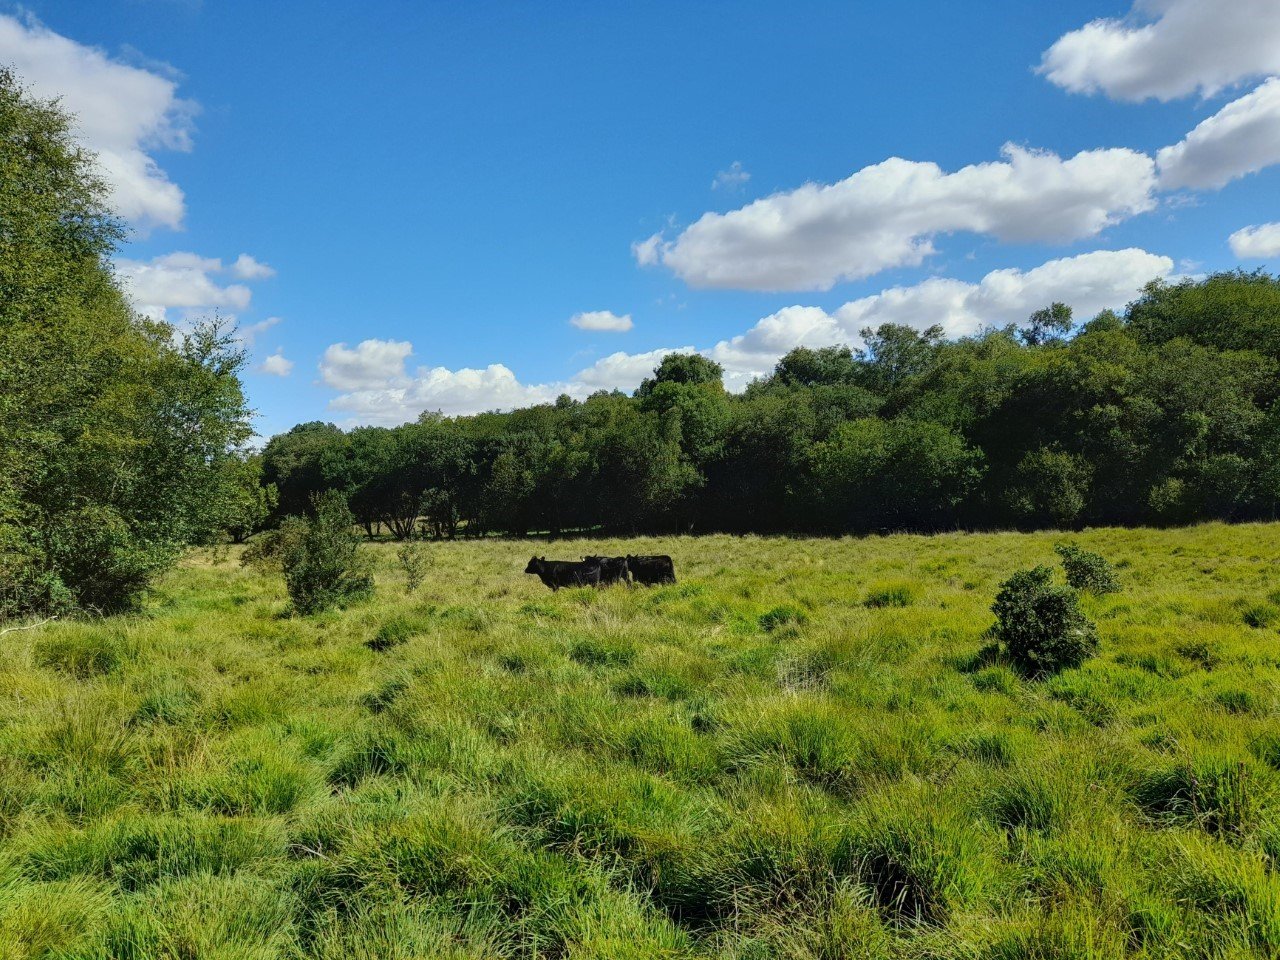 Cattle grazing at Landford Bog Nature Reserve